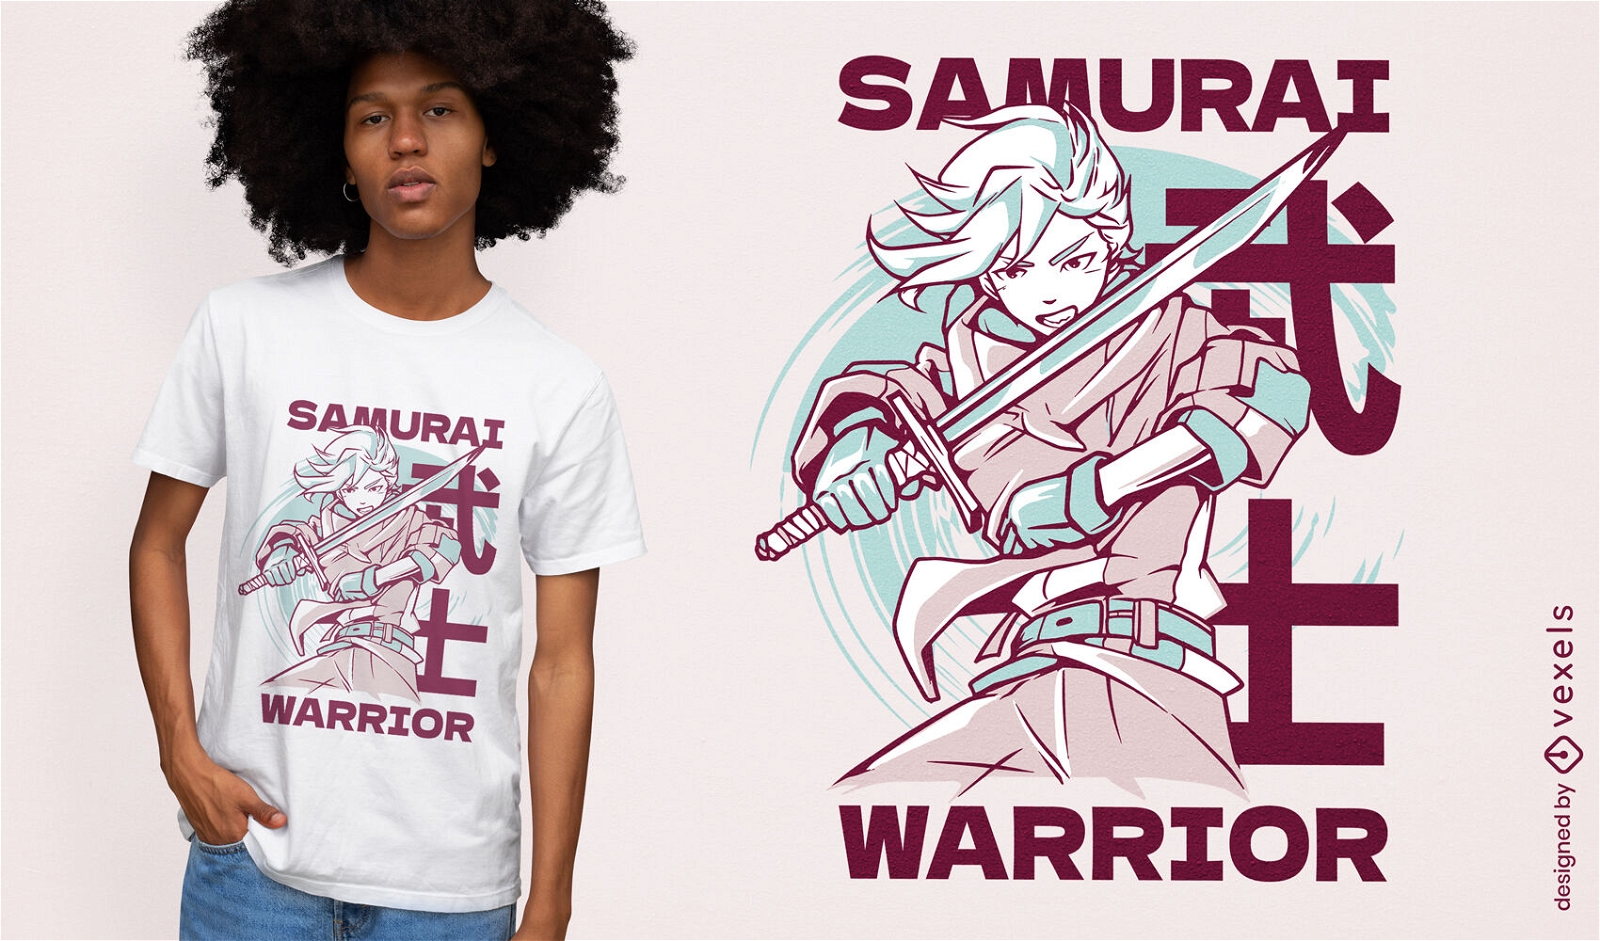 Samurai warrior anime t-shirt design